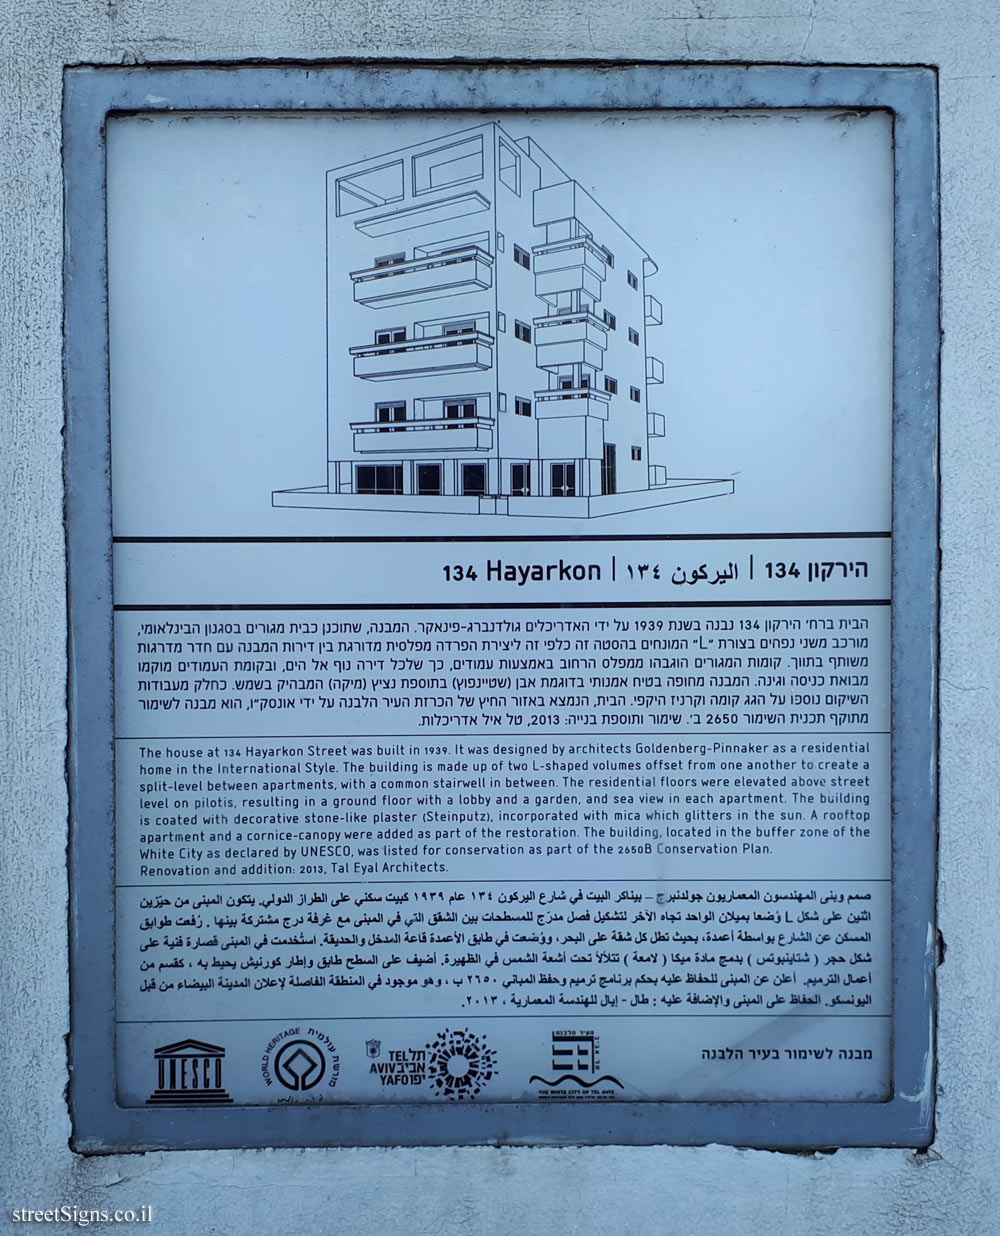 Tel Aviv - buildings for conservation - 134 Hayarkon